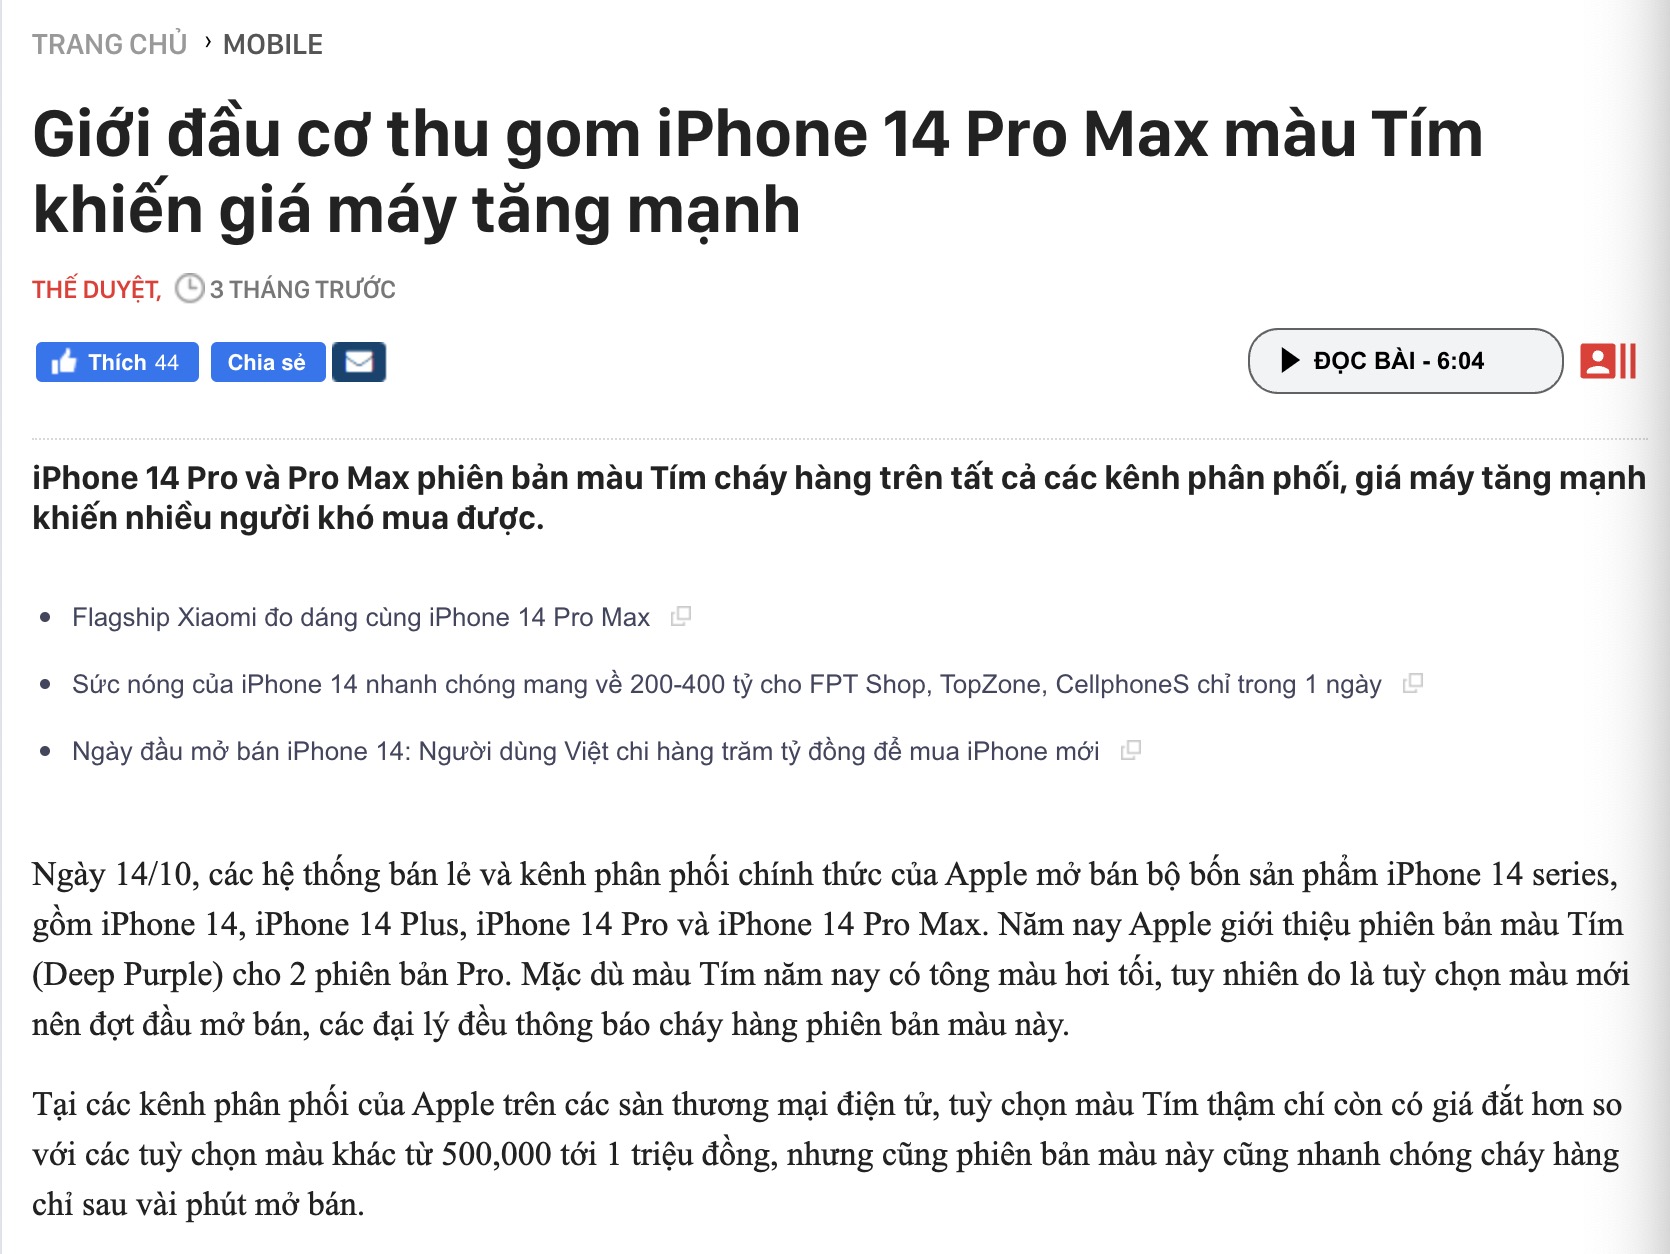 iPhone 14 Pro Max "sập giá", bản màu Tím giờ có giá rẻ nhất - Ảnh 2.